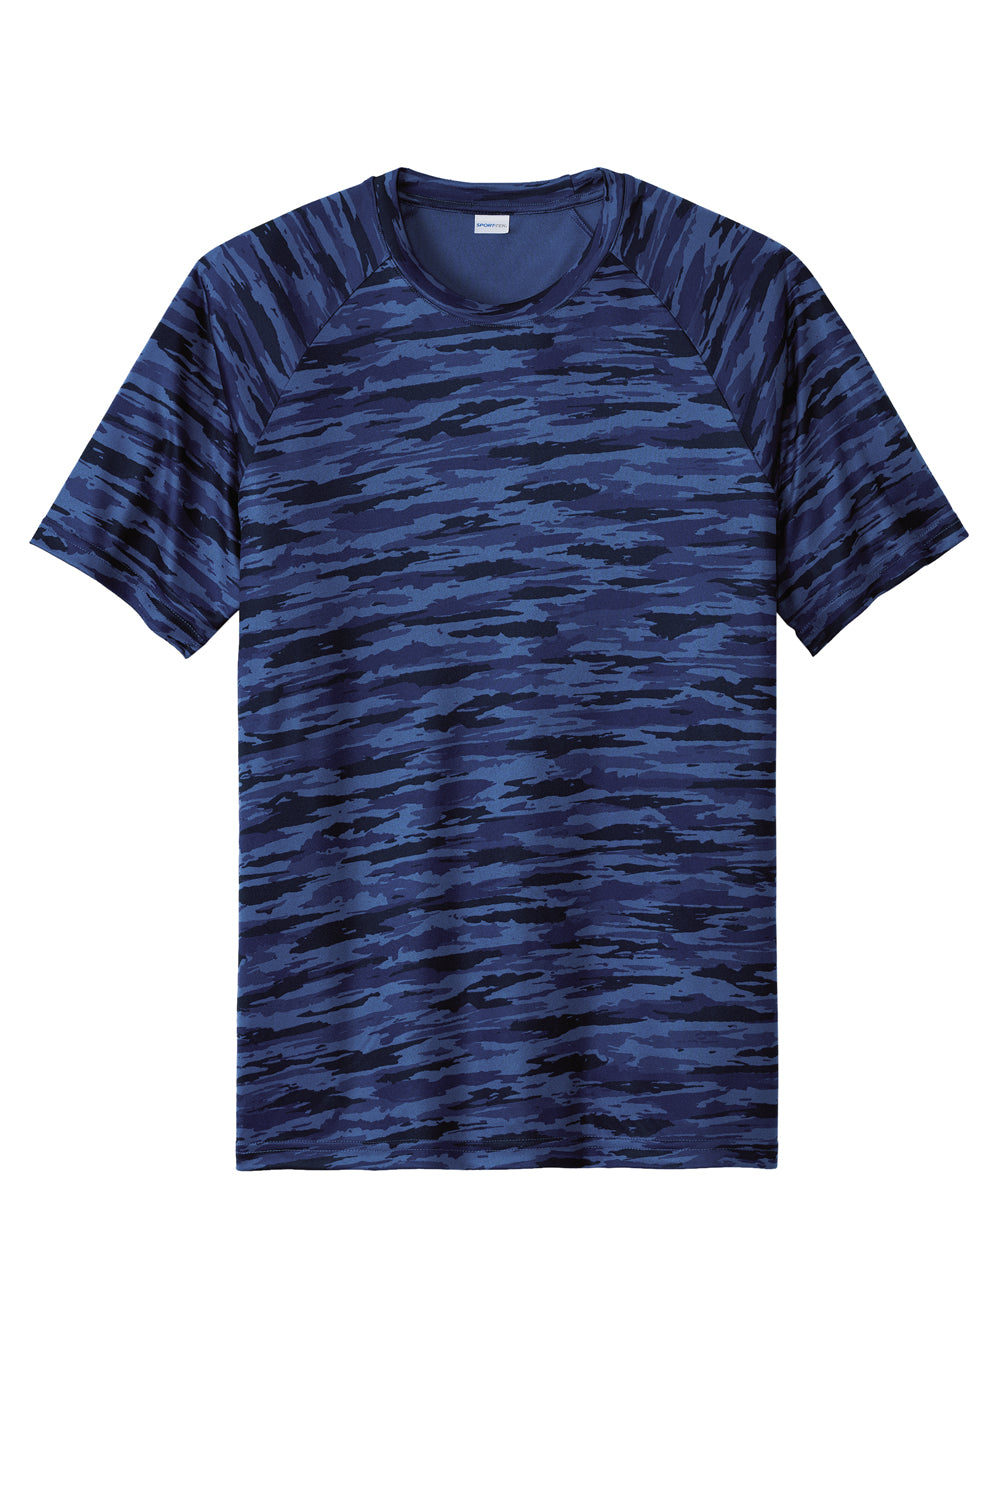 Sport-Tek Mens Drift Camo Short Sleeve Crewneck T-Shirt True Royal Blue Flat Front